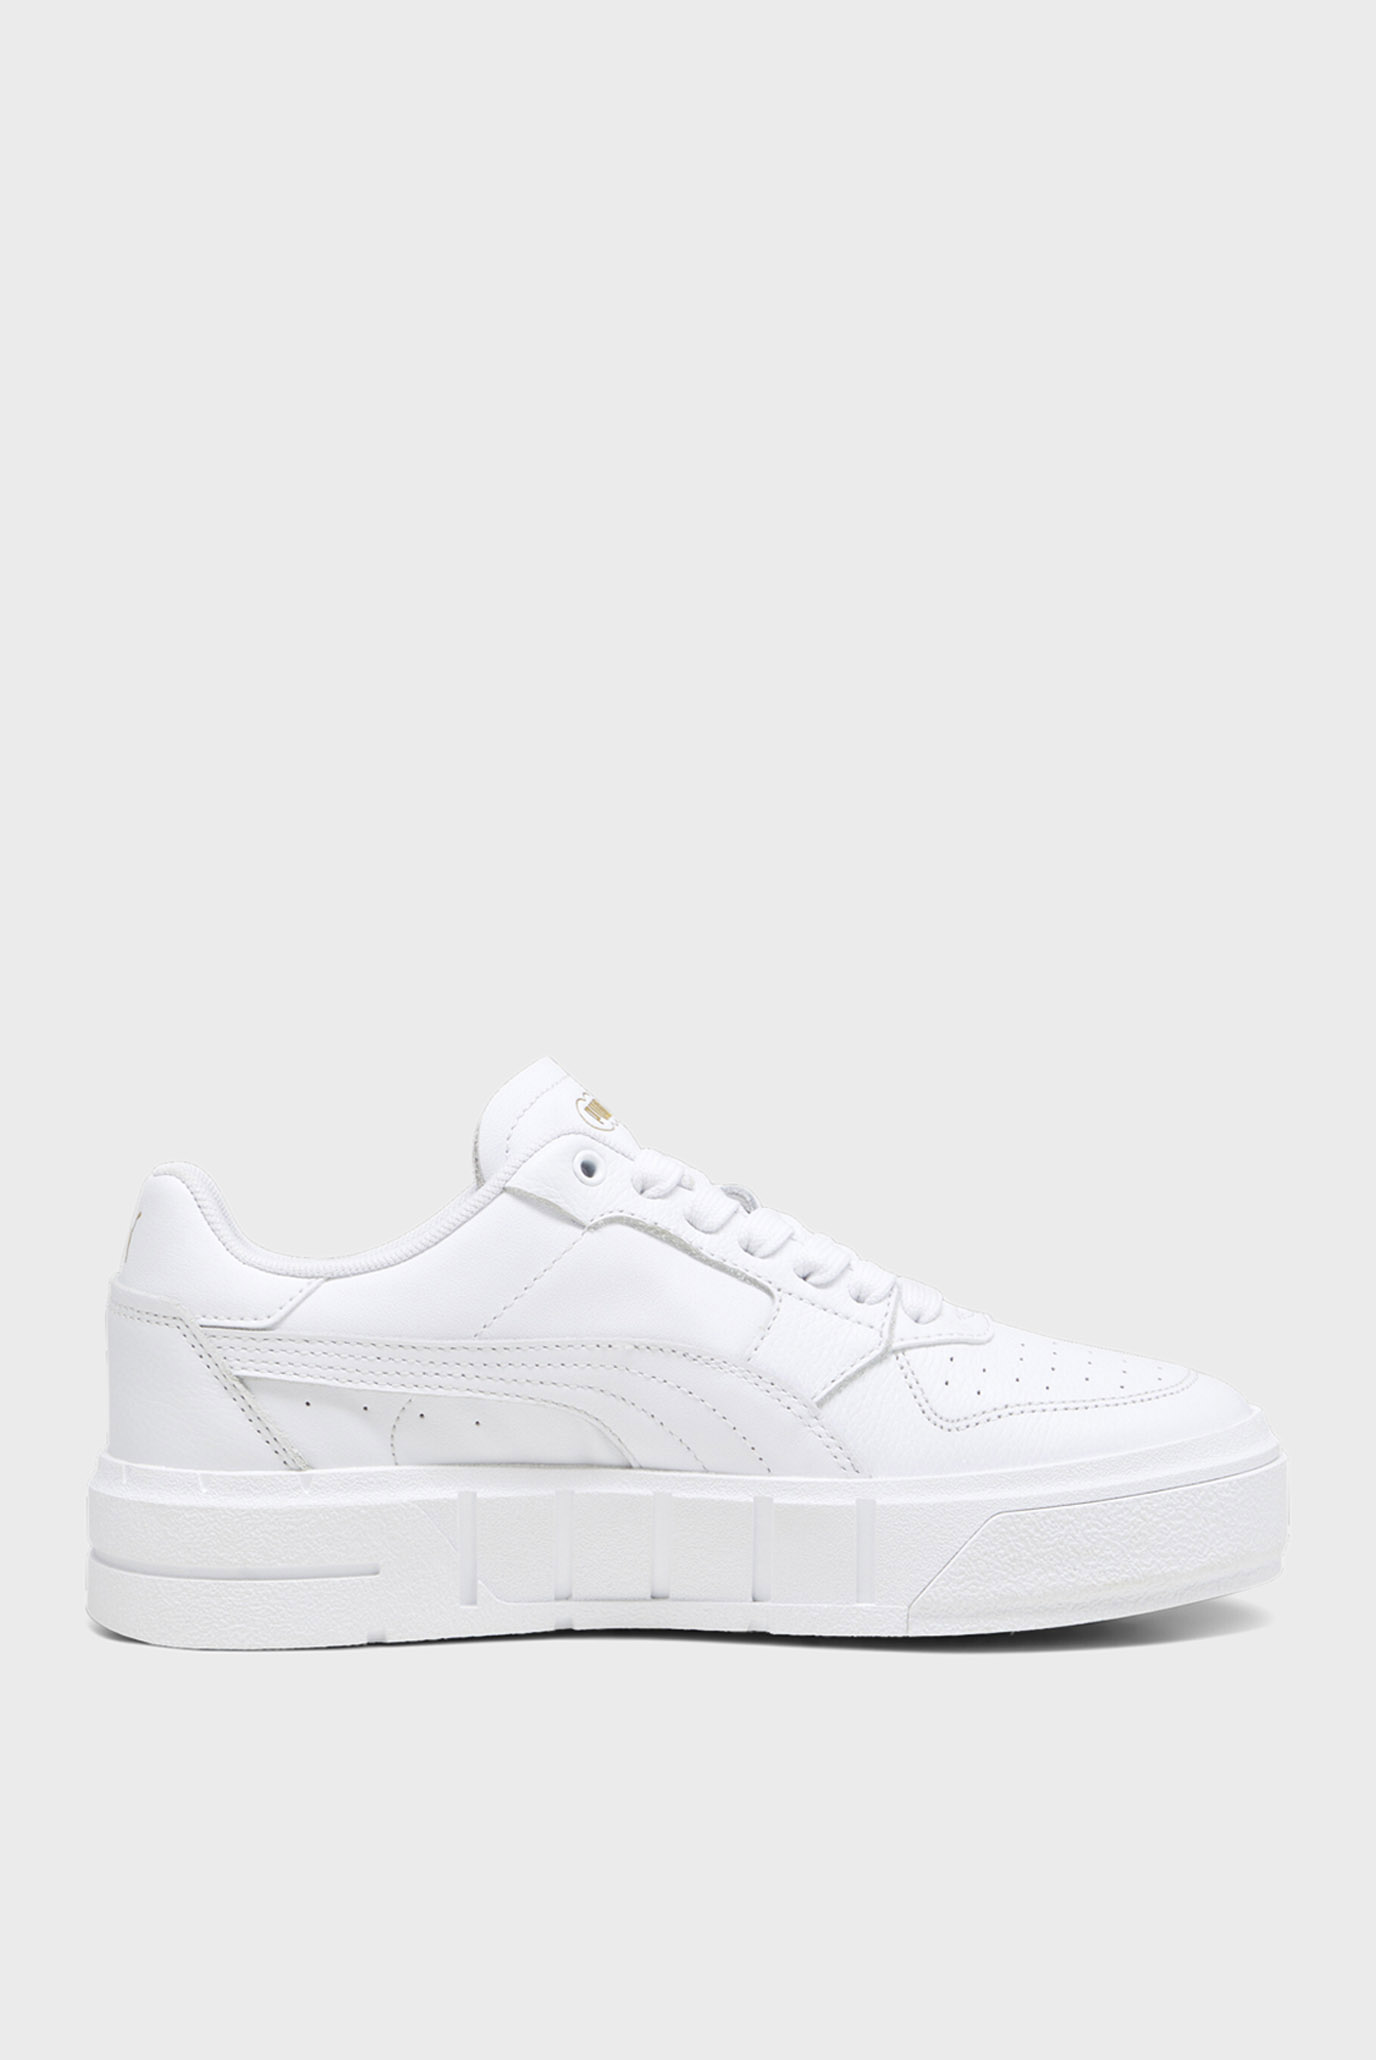 Жіночі білі шкіряні снікерси PUMA Cali Court Leather Women’s Sneakers 1